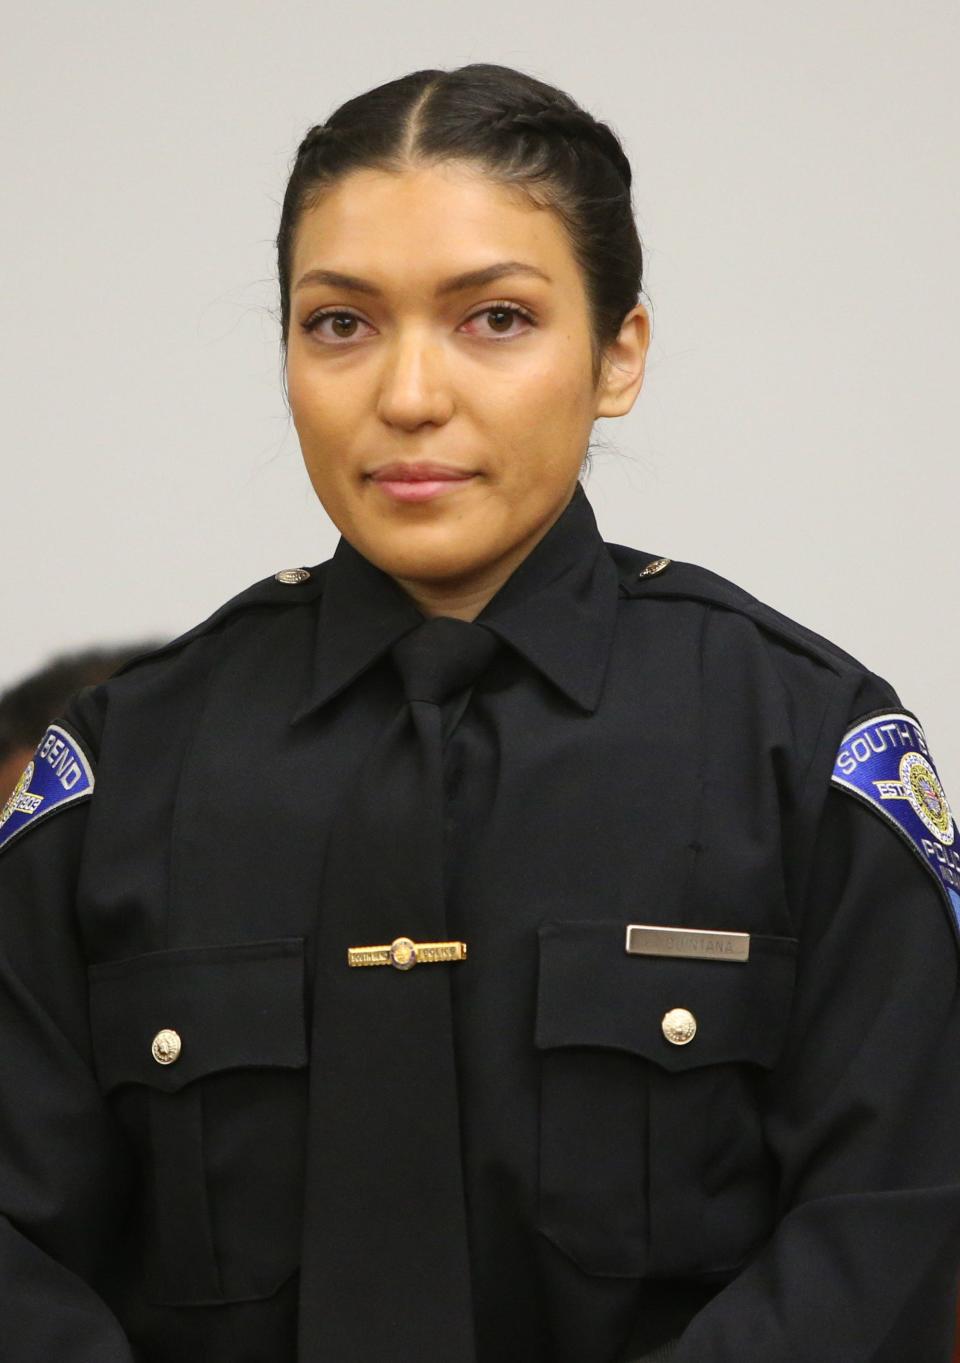 South Bend Police Officer Faith Quintana